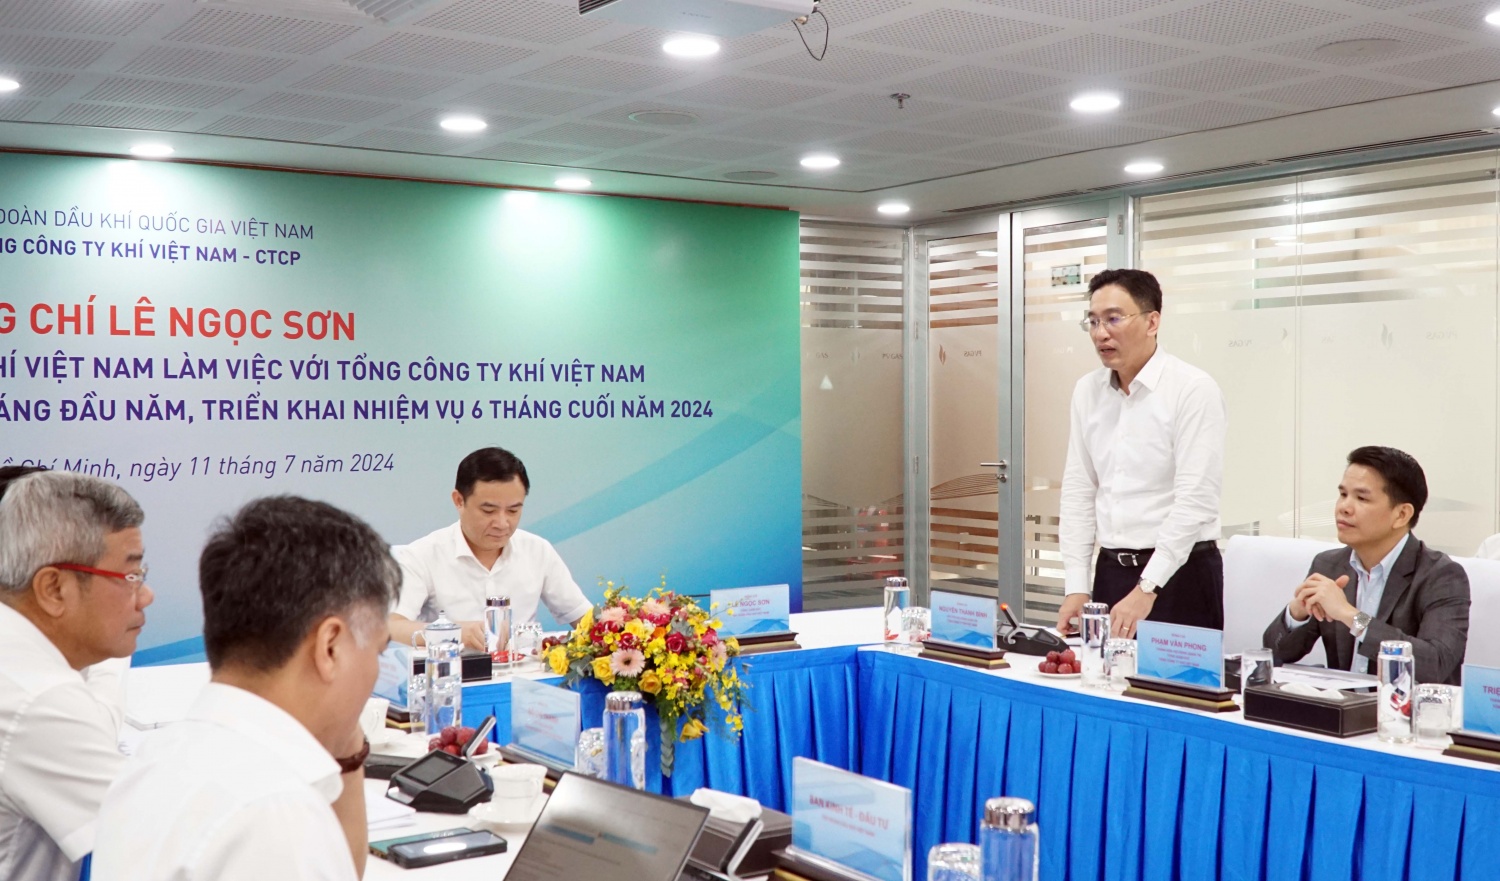 Chủ tịch HĐQT PV GAS Nguyễn Thanh Bình báo cáo